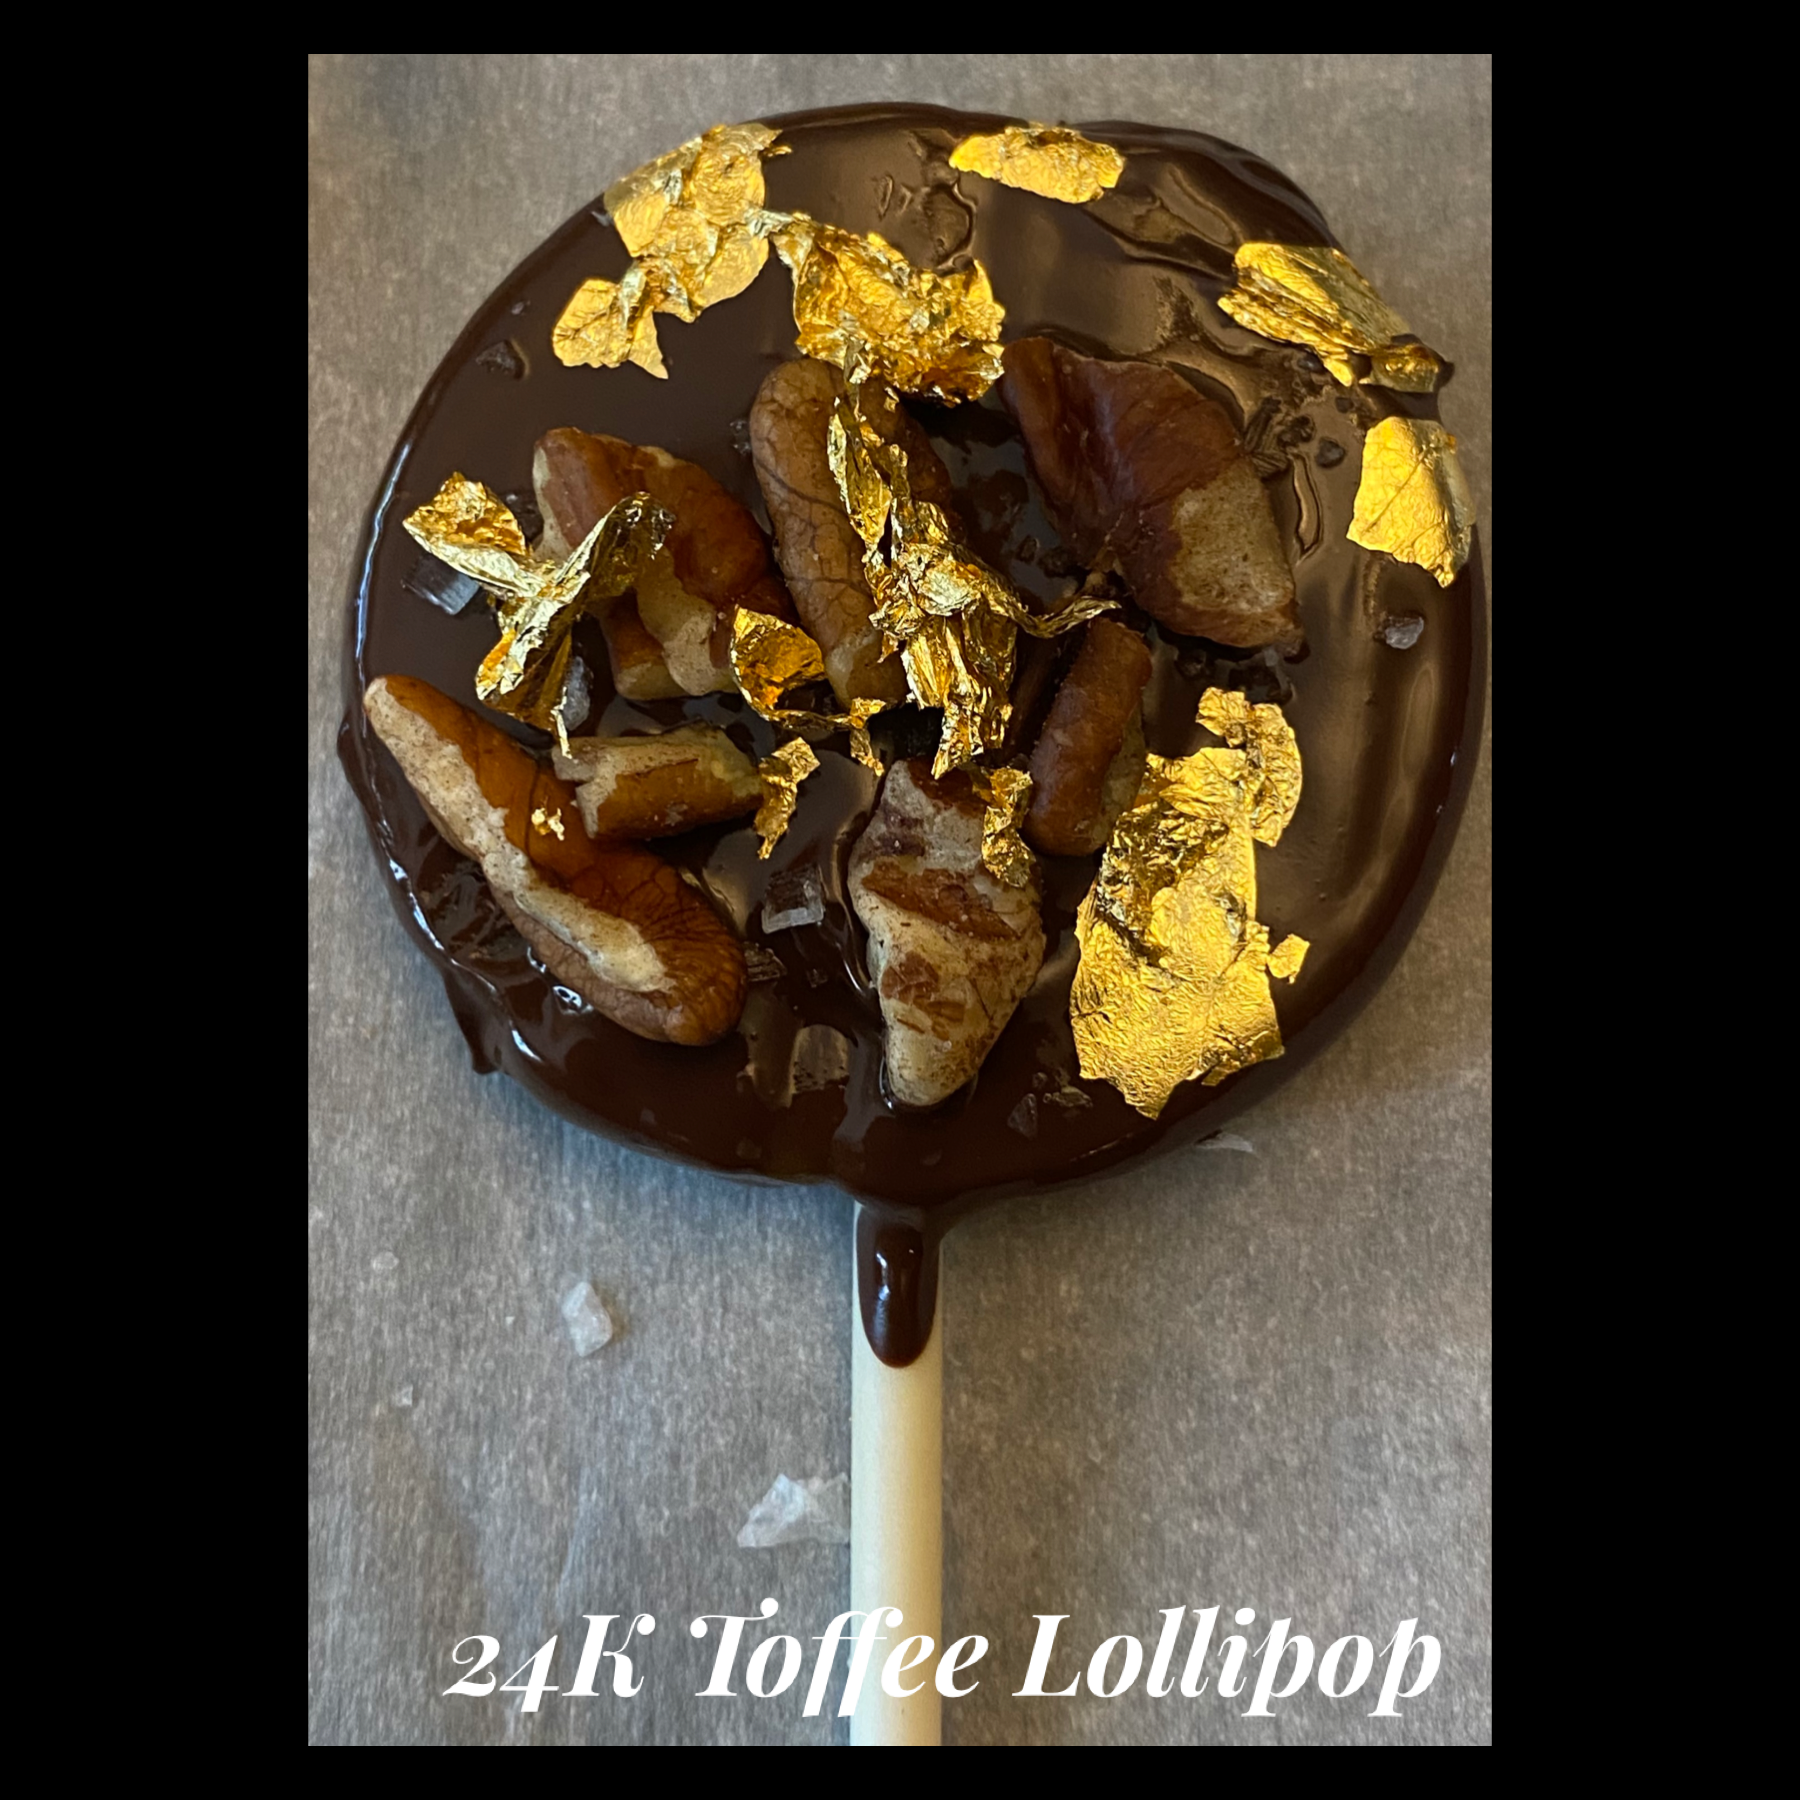 Toffee Lollipops